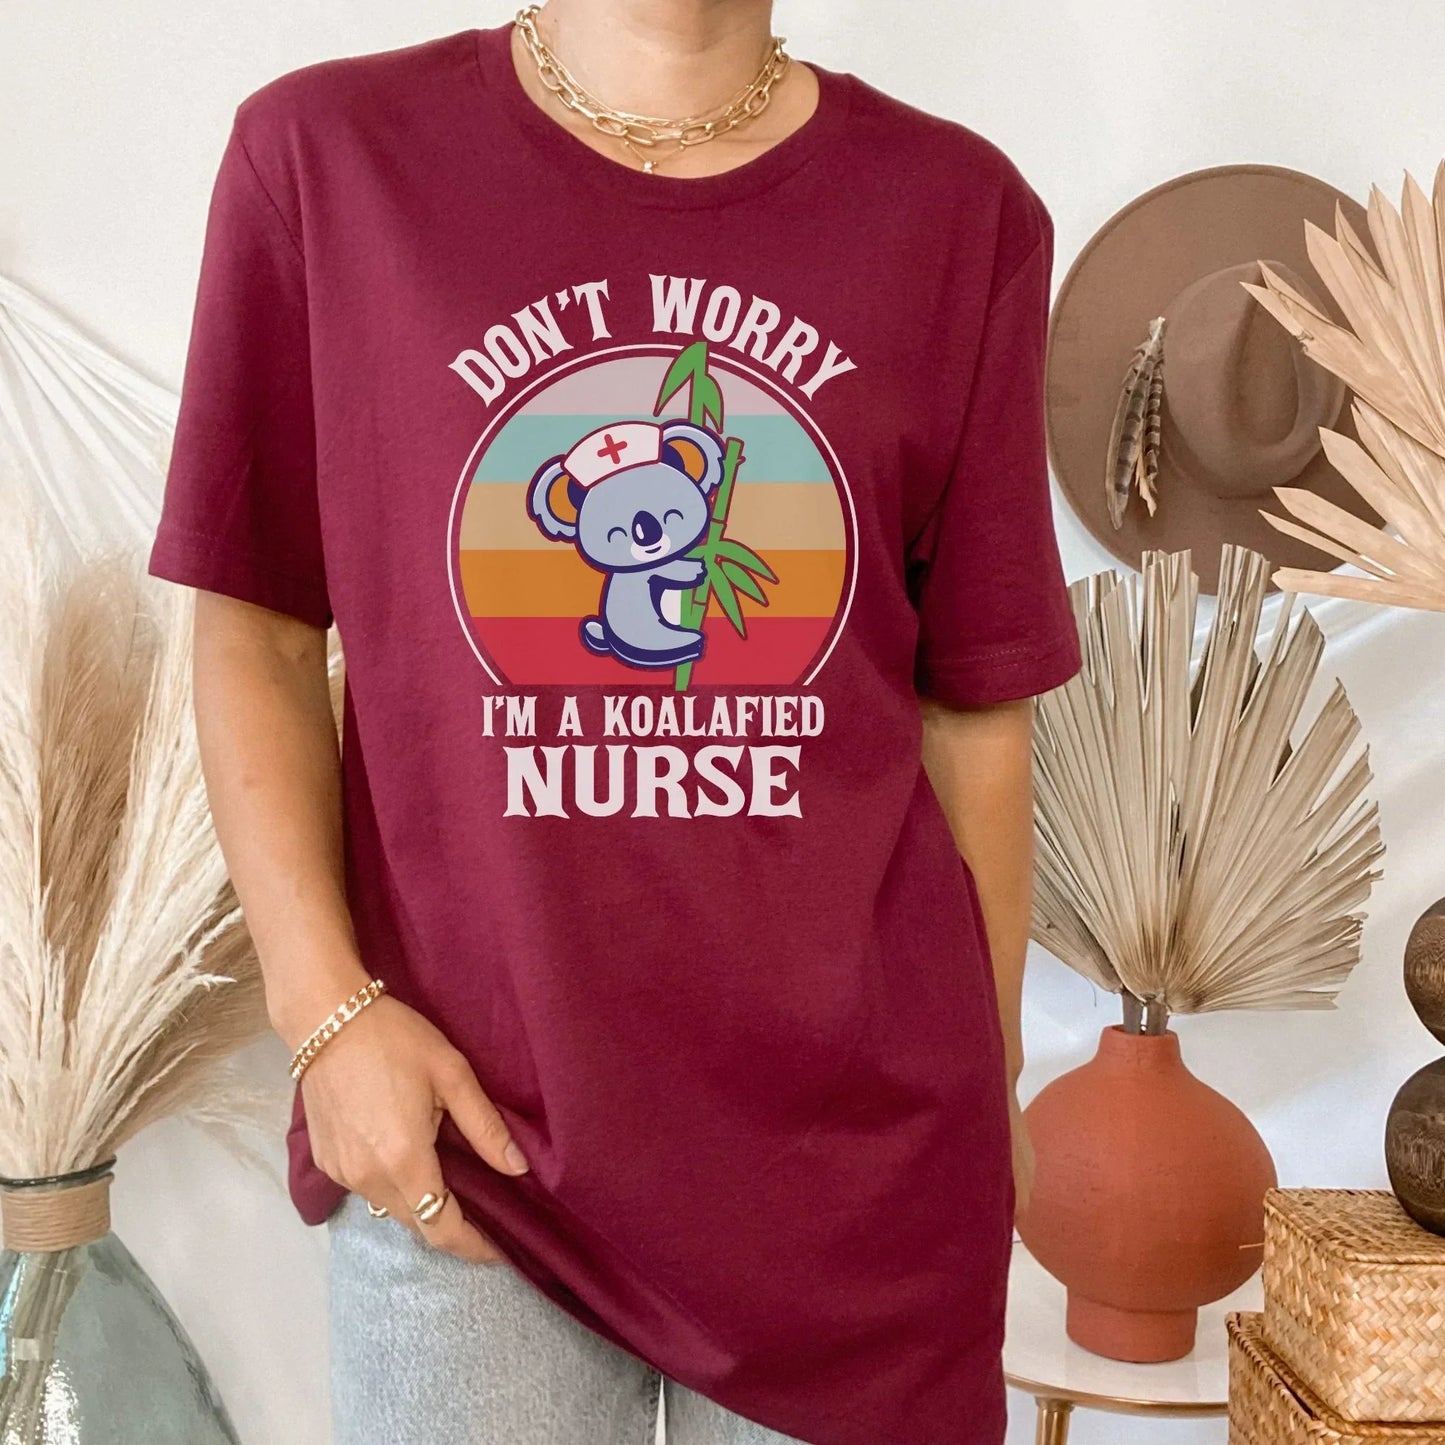 Kolafied, Registered Nurse Shirt, Nursing Student, Pediatric Nurse, ER Nurse Sweatshirt, Nurse Gift, Nurse Hoodie, Funny Nurse Shirt, Nurse Practitioner